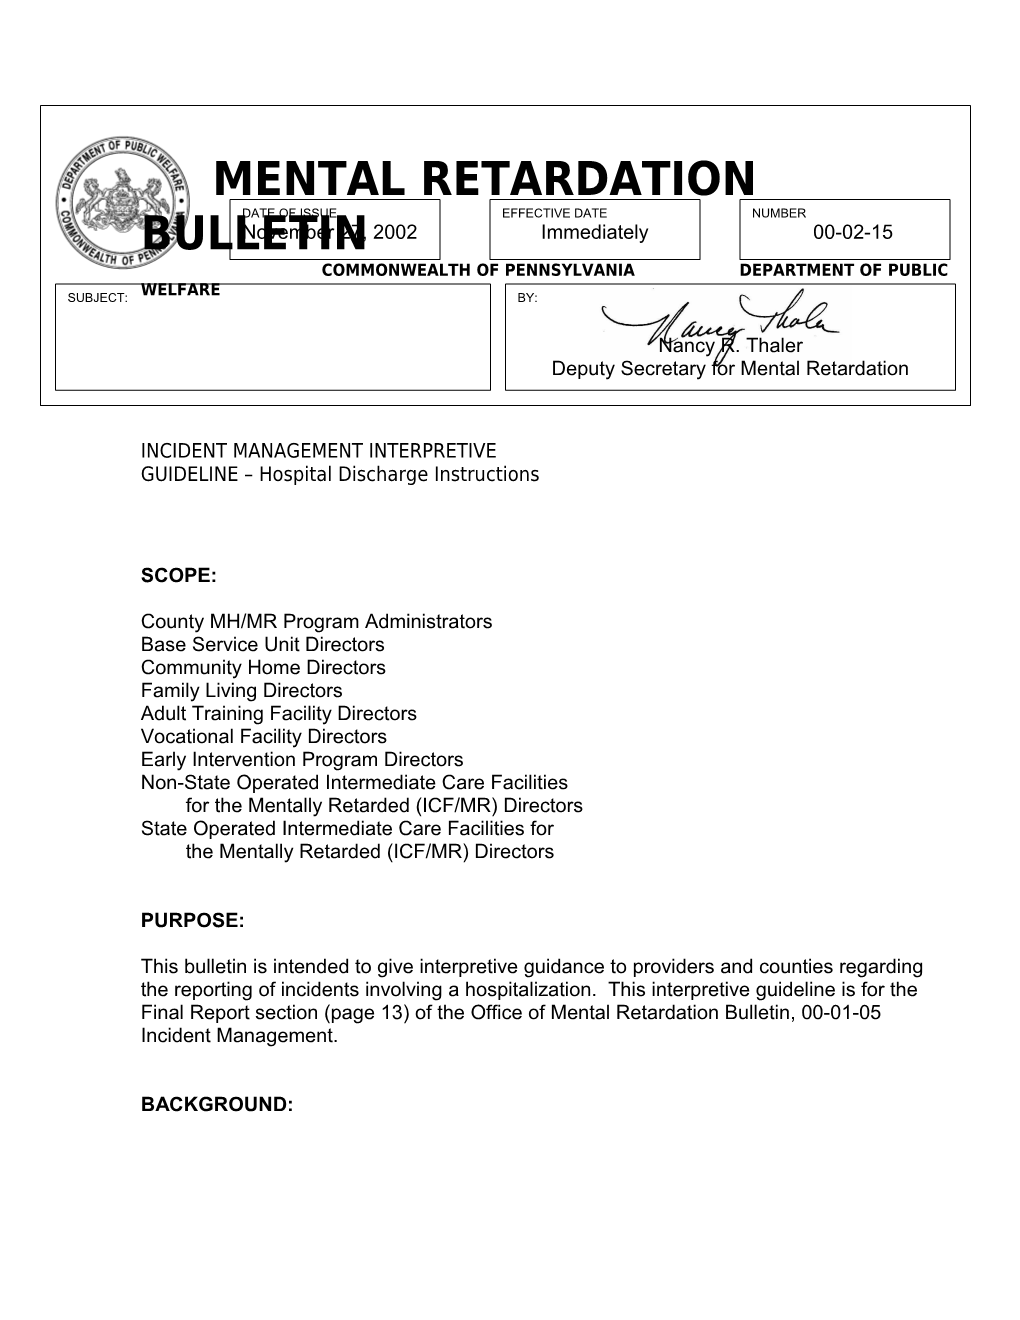 Mental Retardation Bulletin